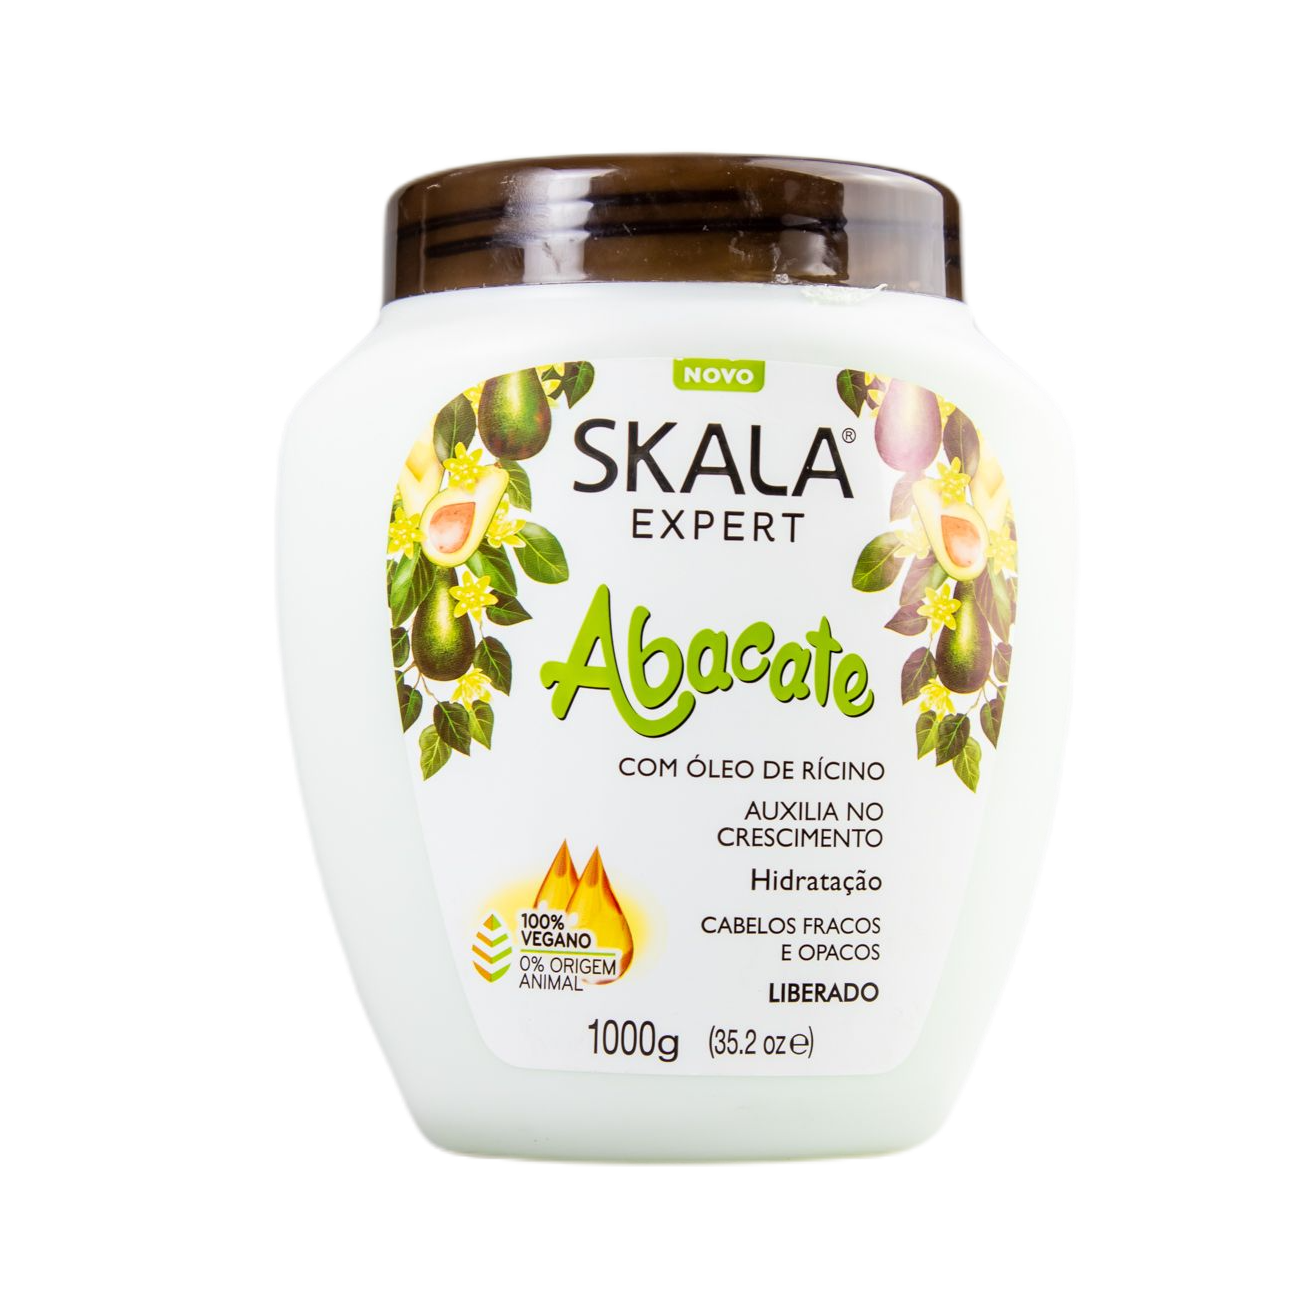 Skala Treatment Cream Creme De Tratamento Abacate / Treatment Cream Avocado - Skala